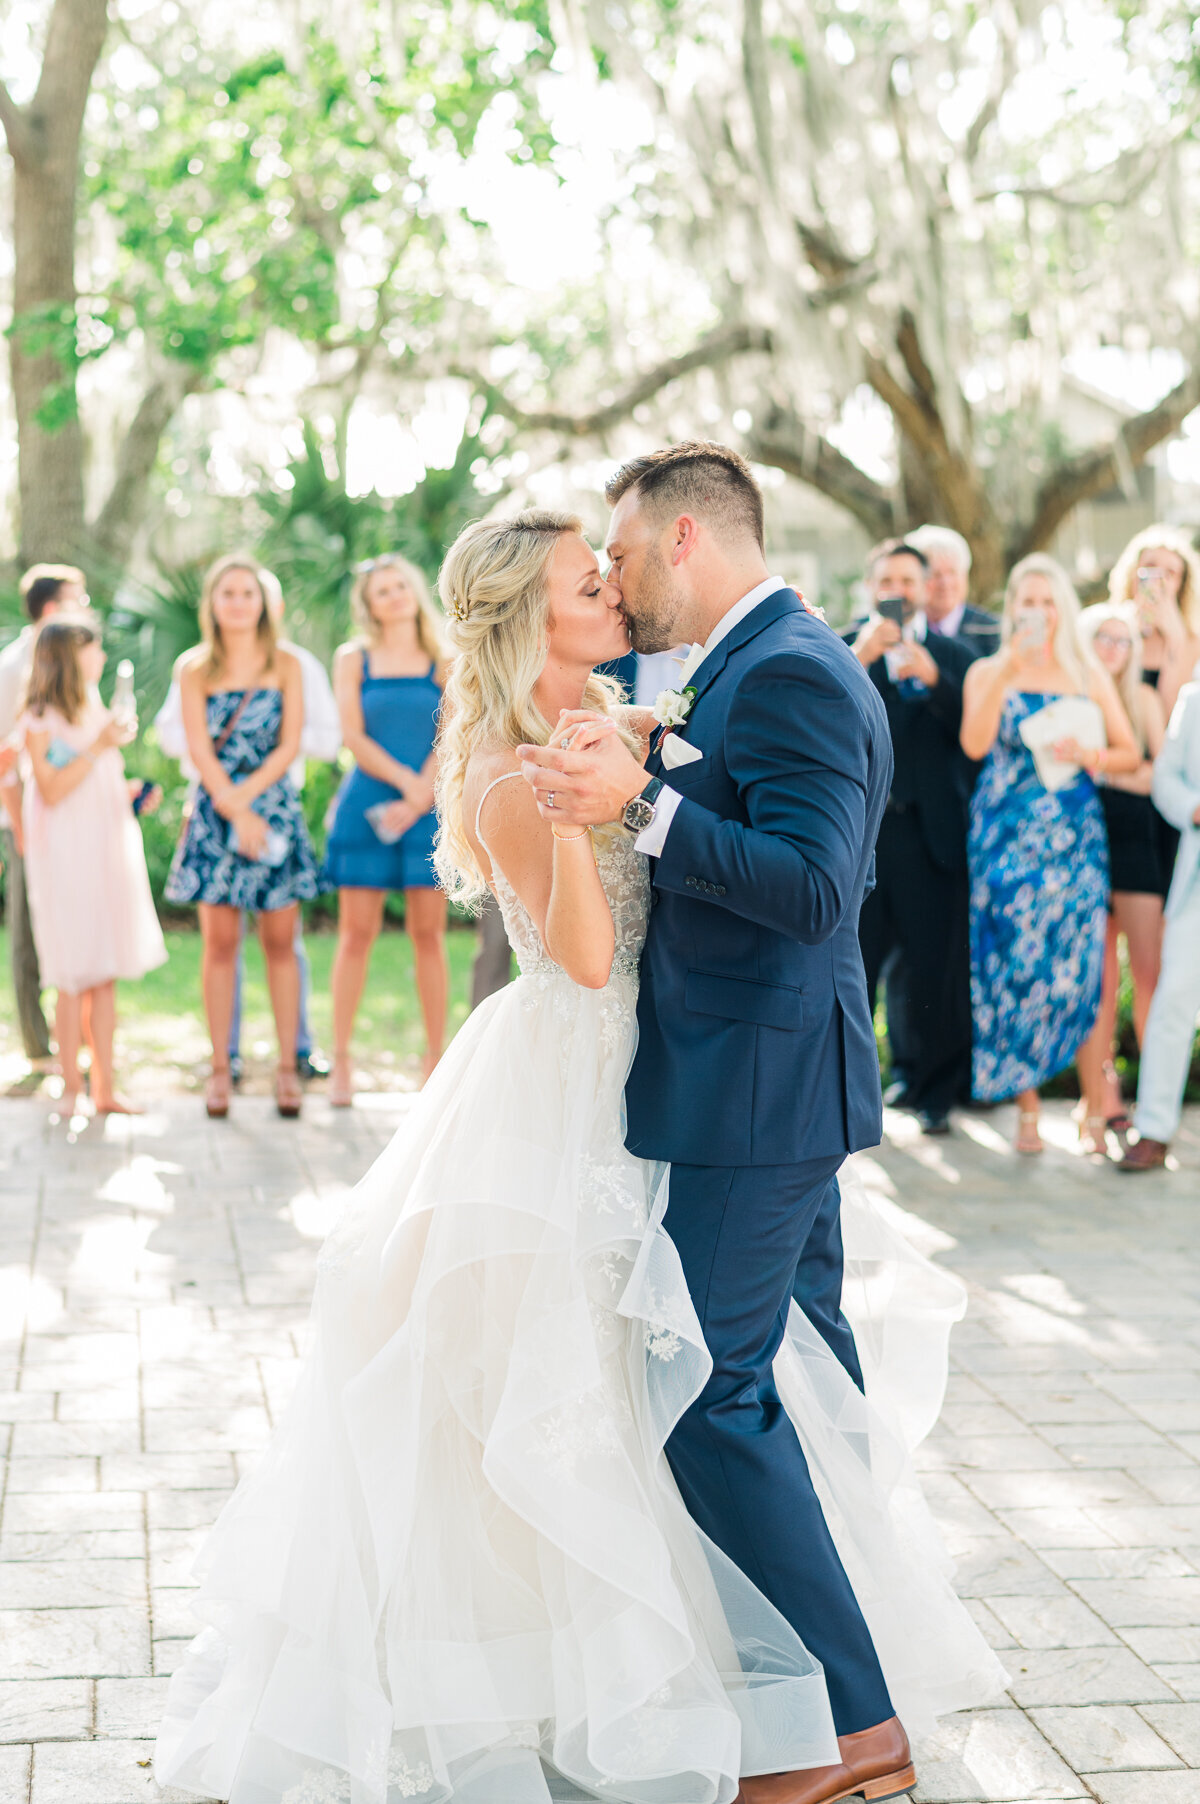 Meg & Nick Up the Creek Farms Wedding | Lisa Marshall Photography 4